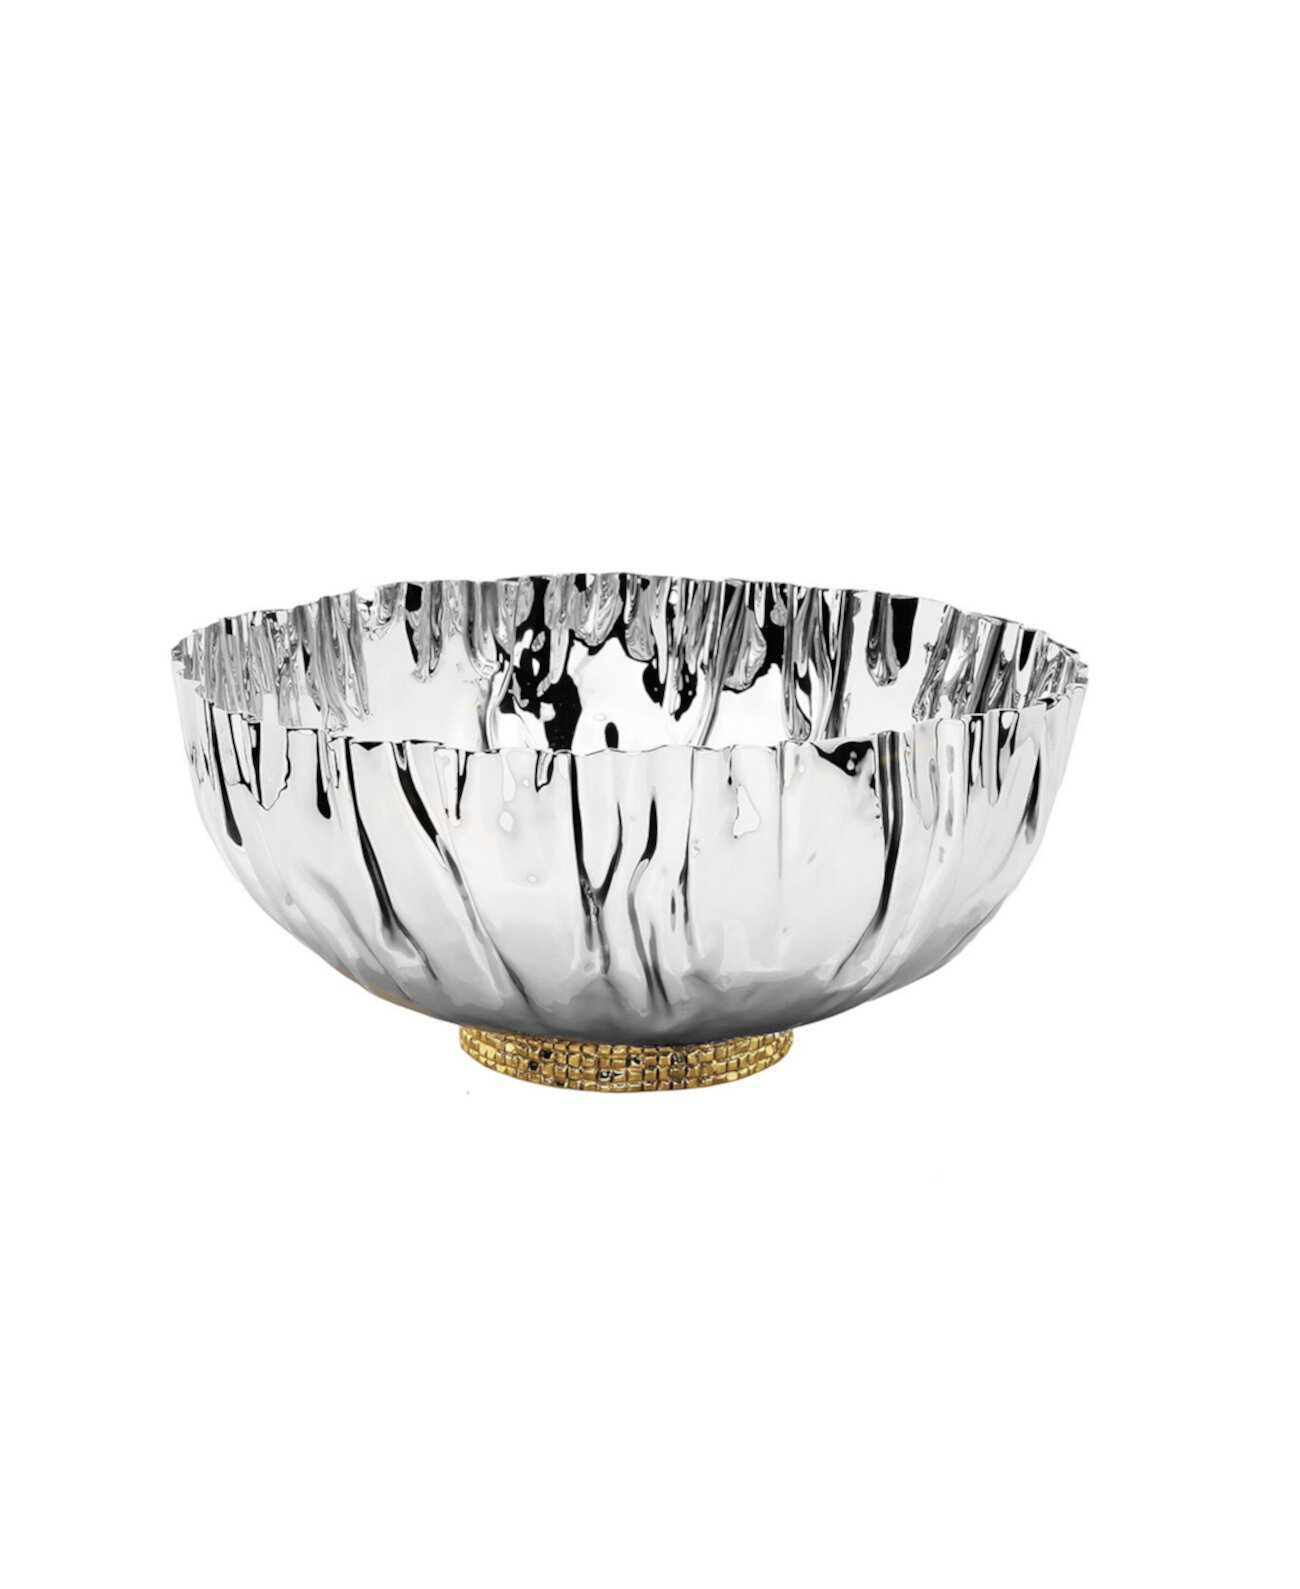 Мятая чаша из нержавеющей стали с мозаичной основой золотистого цвета Classic Touch